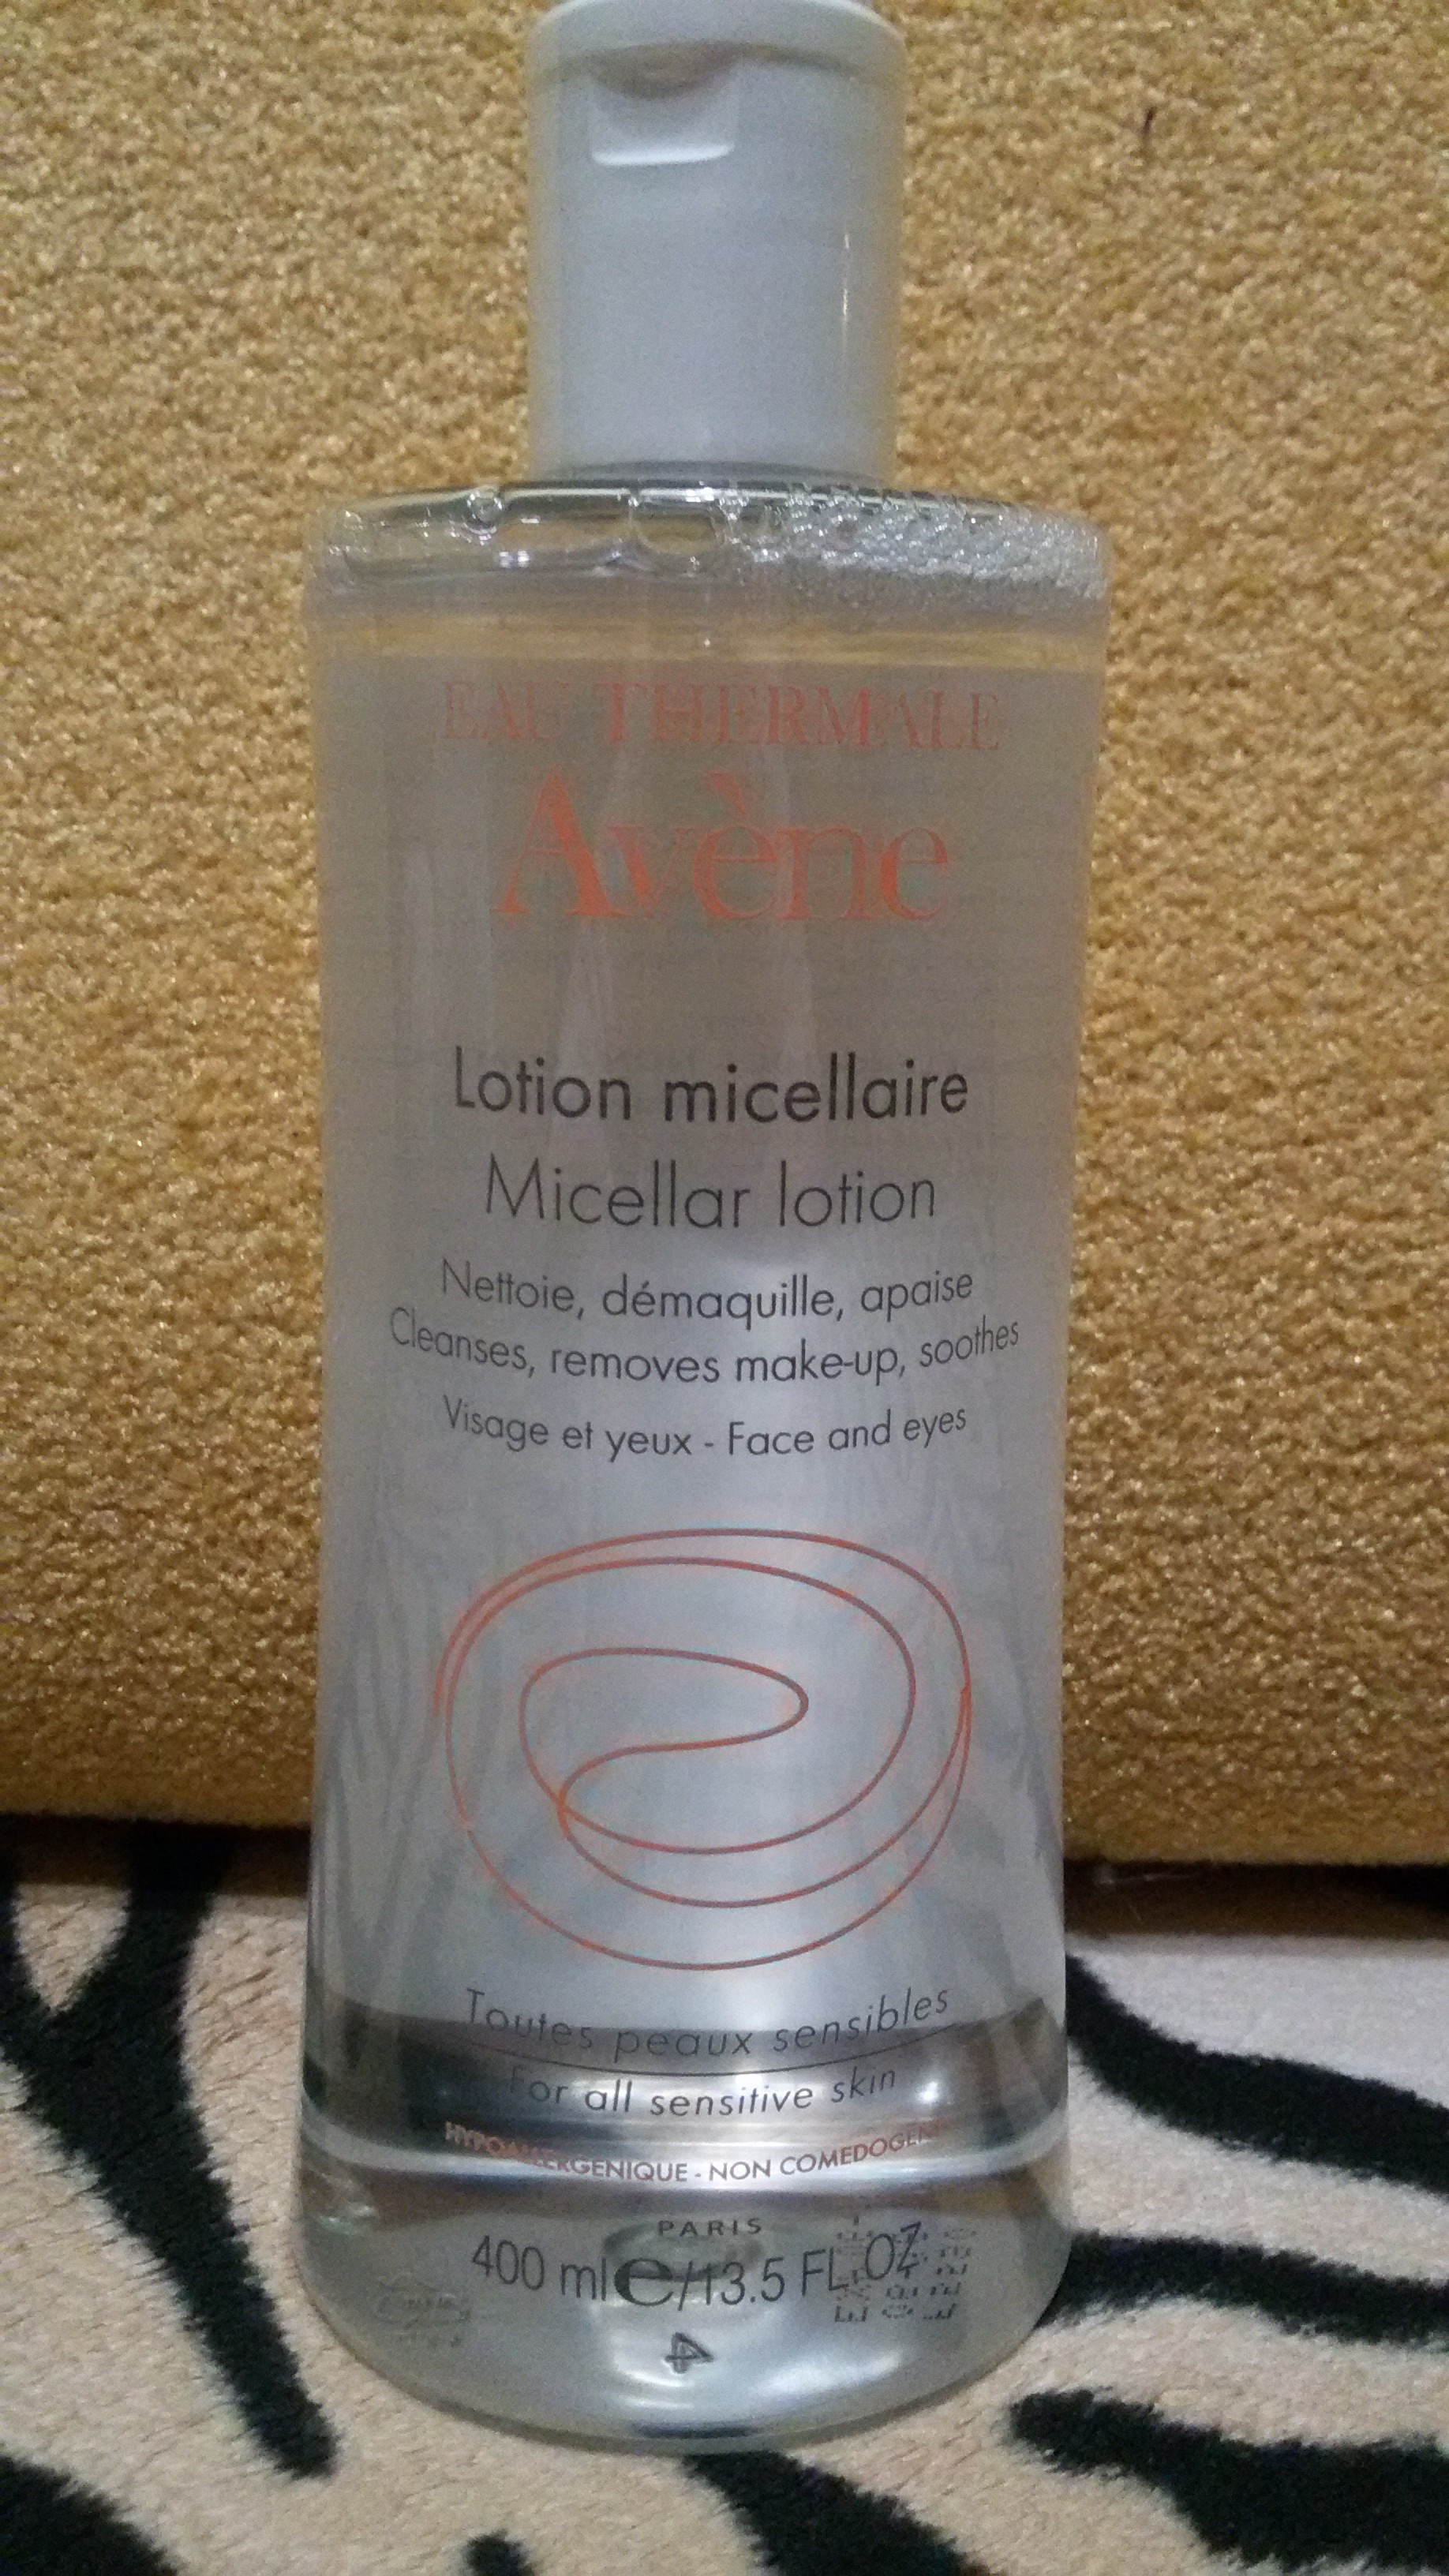 Очищающий мицеллярный лосьон Avene cleansing micellar lotion 400мл